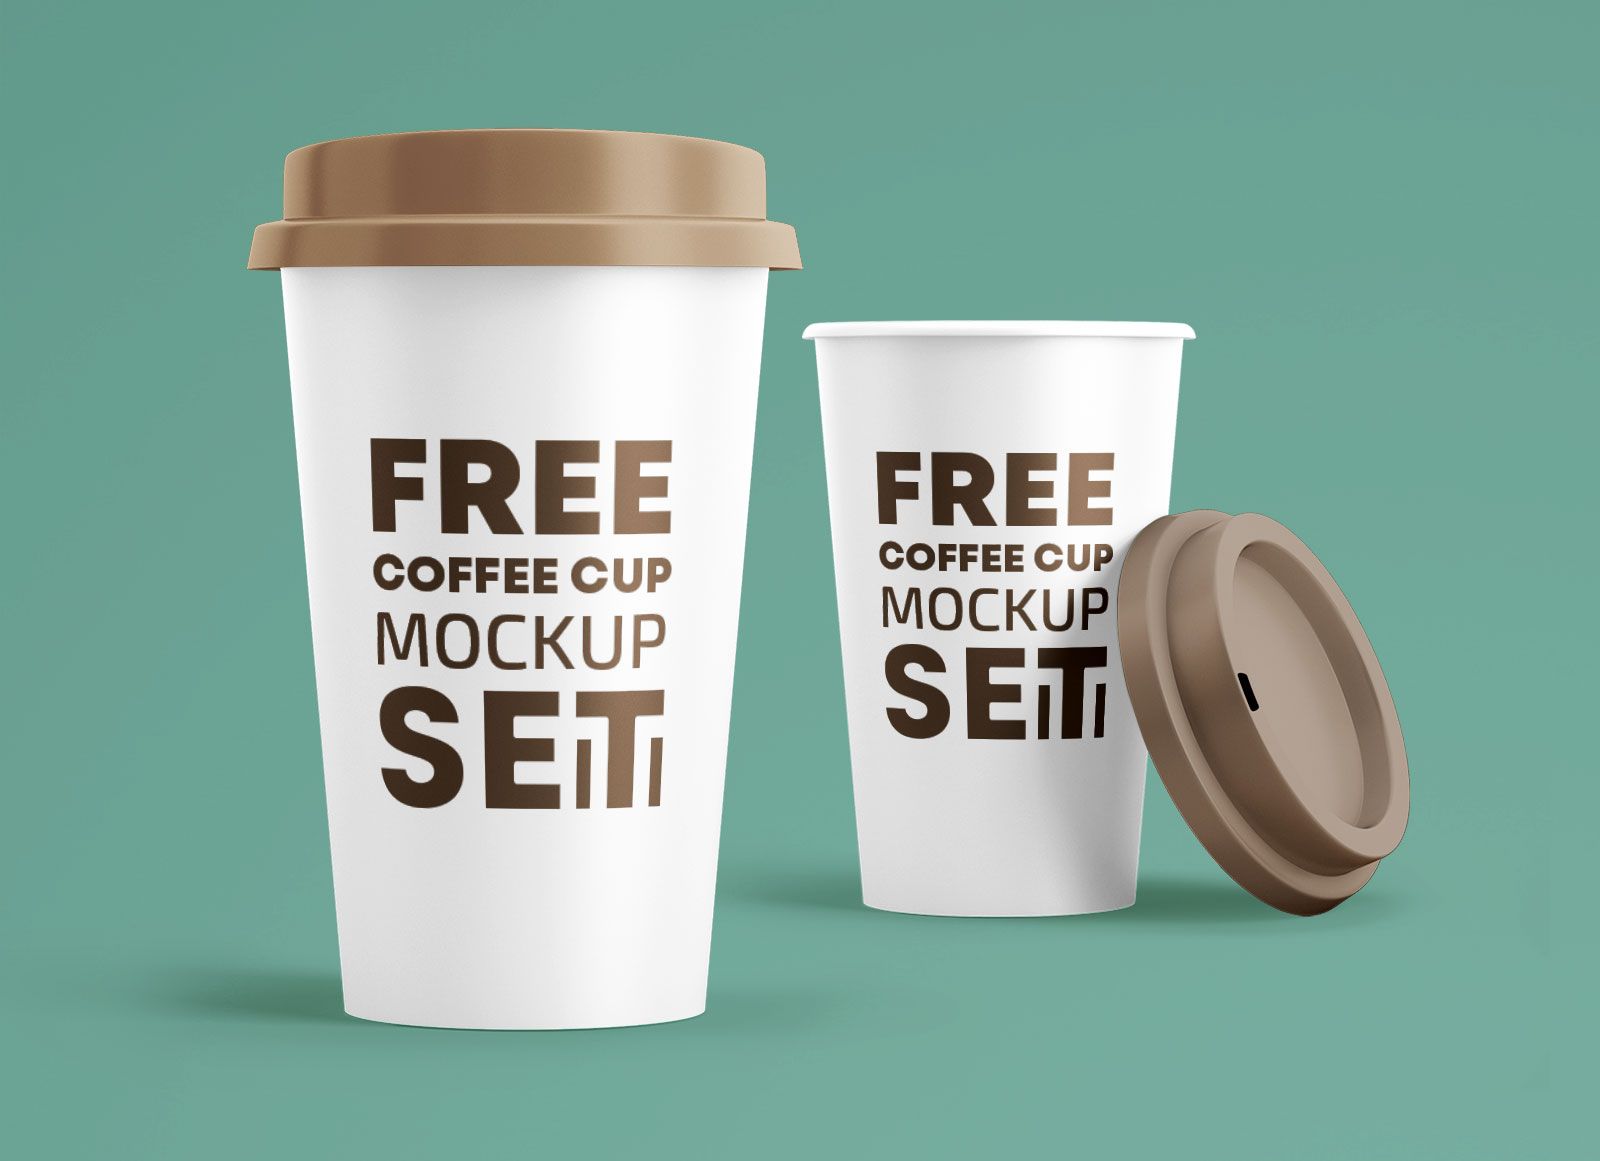 Free Coffee Cup Mockup PSD Set | Coffee cups, Free coffee, Mockup